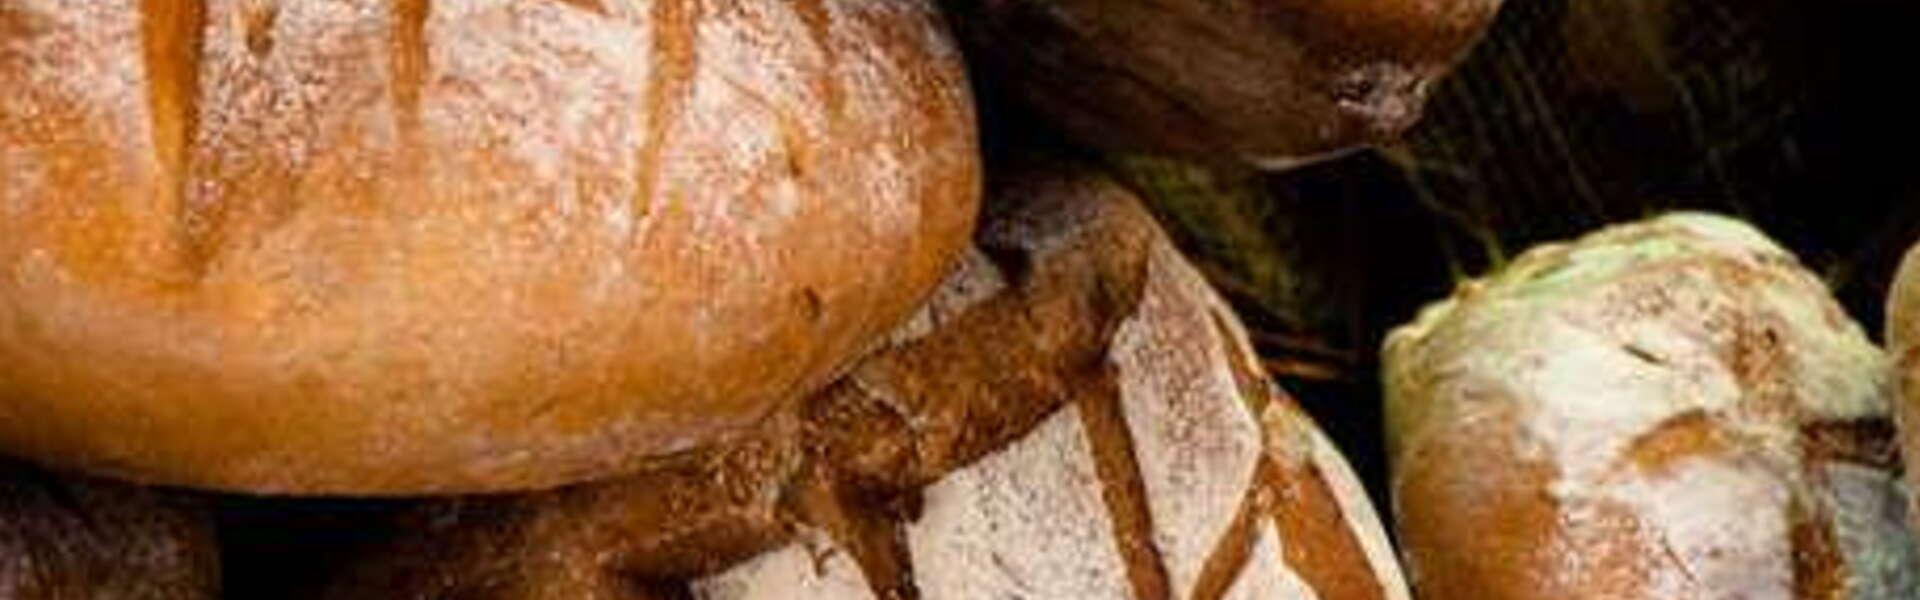 Bochenki chleba wypieczone, obsypane mąką. Ułożone obok siebie.